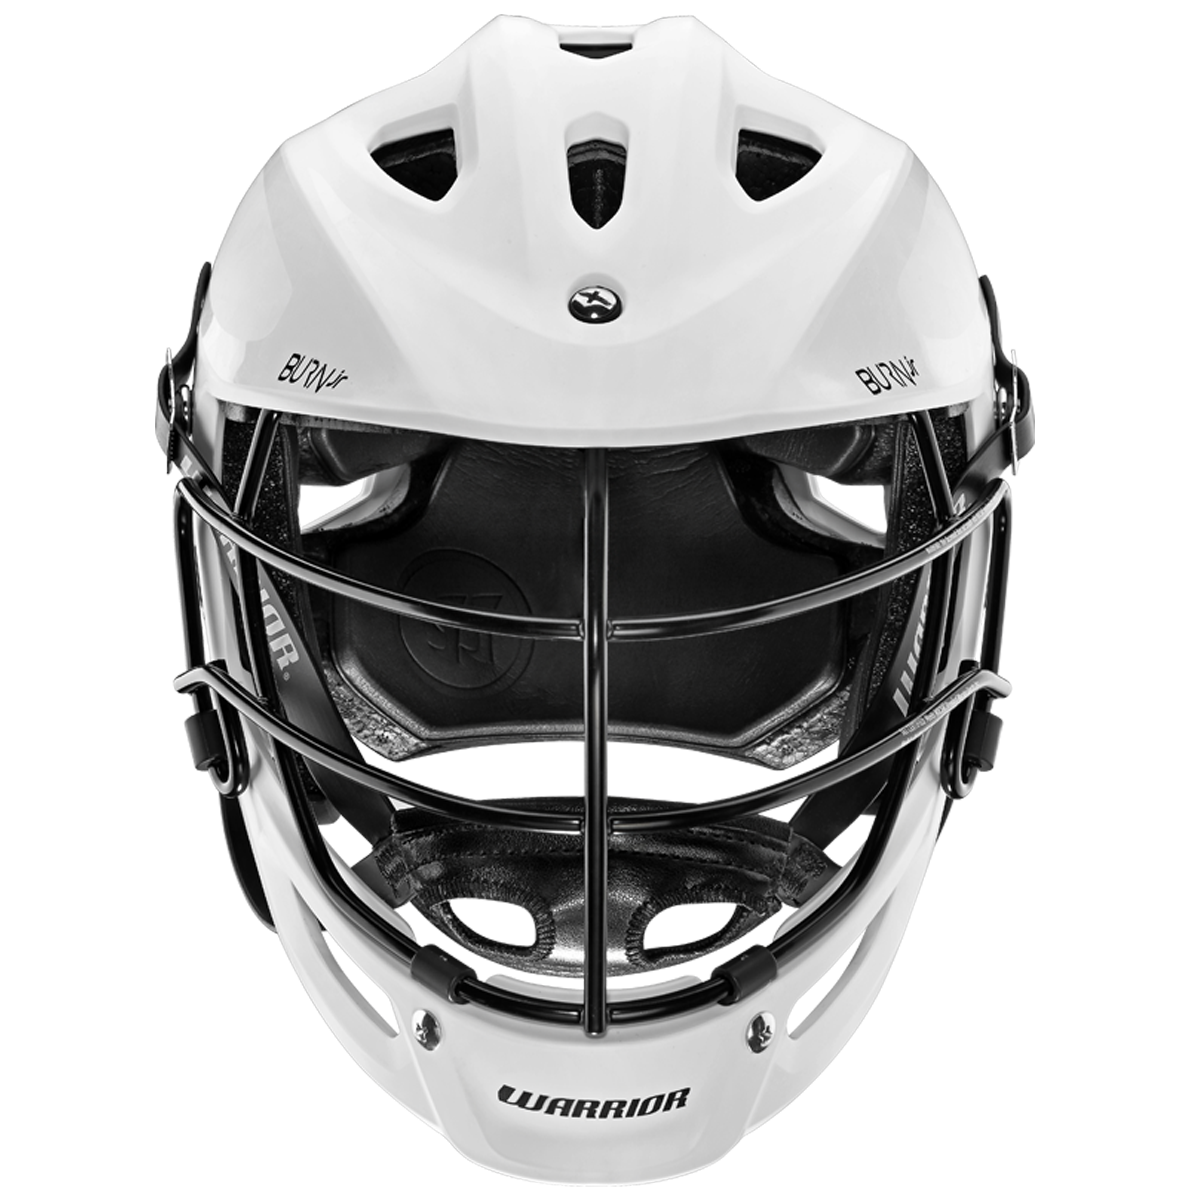 Warrior Burn Junior Lacrosse Helmet